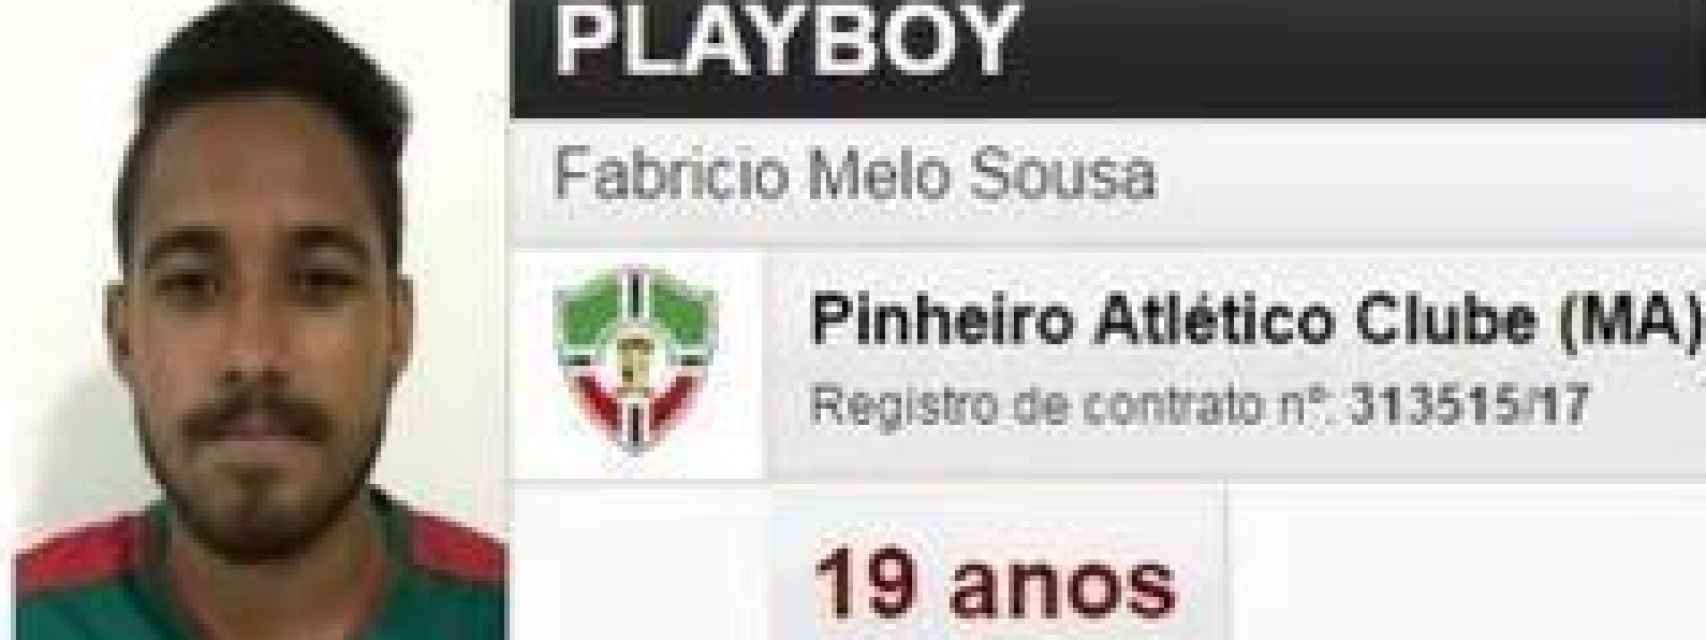 El futbolista brasileño Fabricio Melo Sousa se hace llamar Playboy.